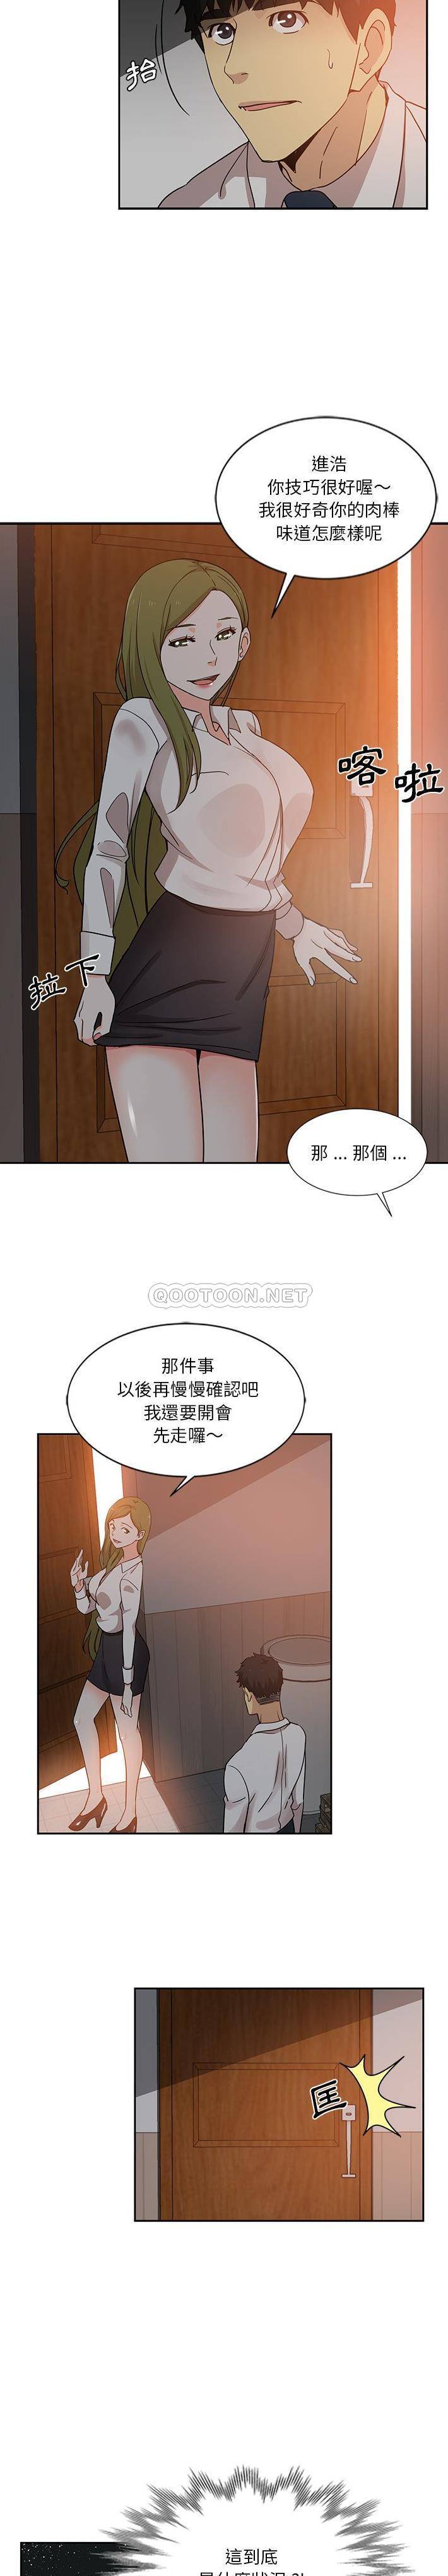 韩国污漫画 危險純友誼 第6话 12